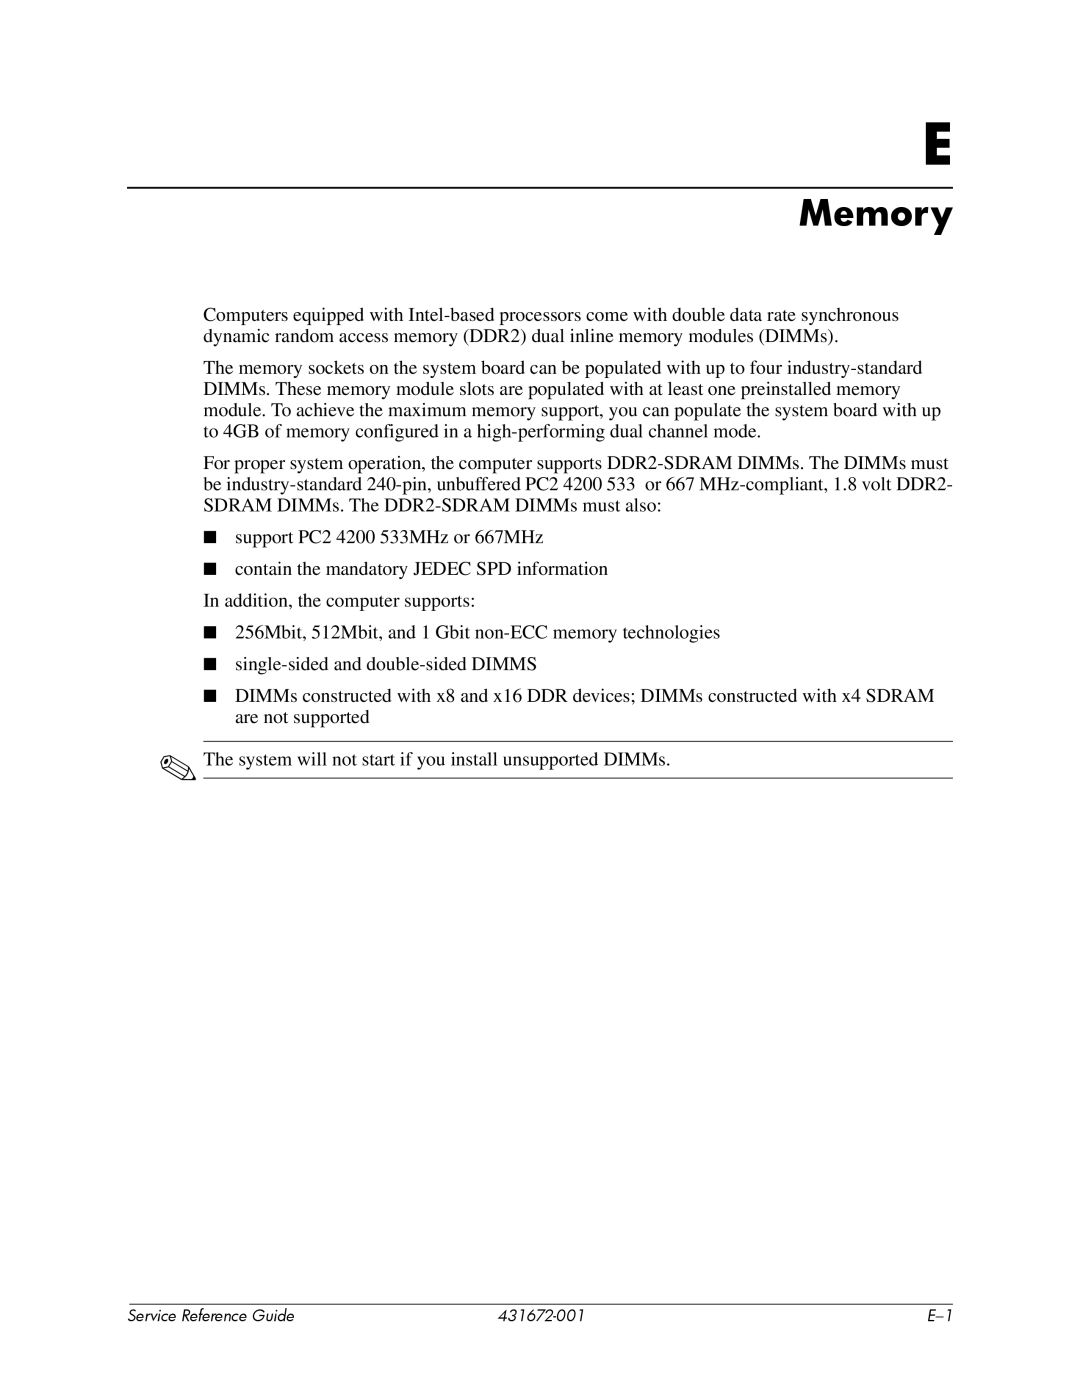 HP dx2700 manual Memory 